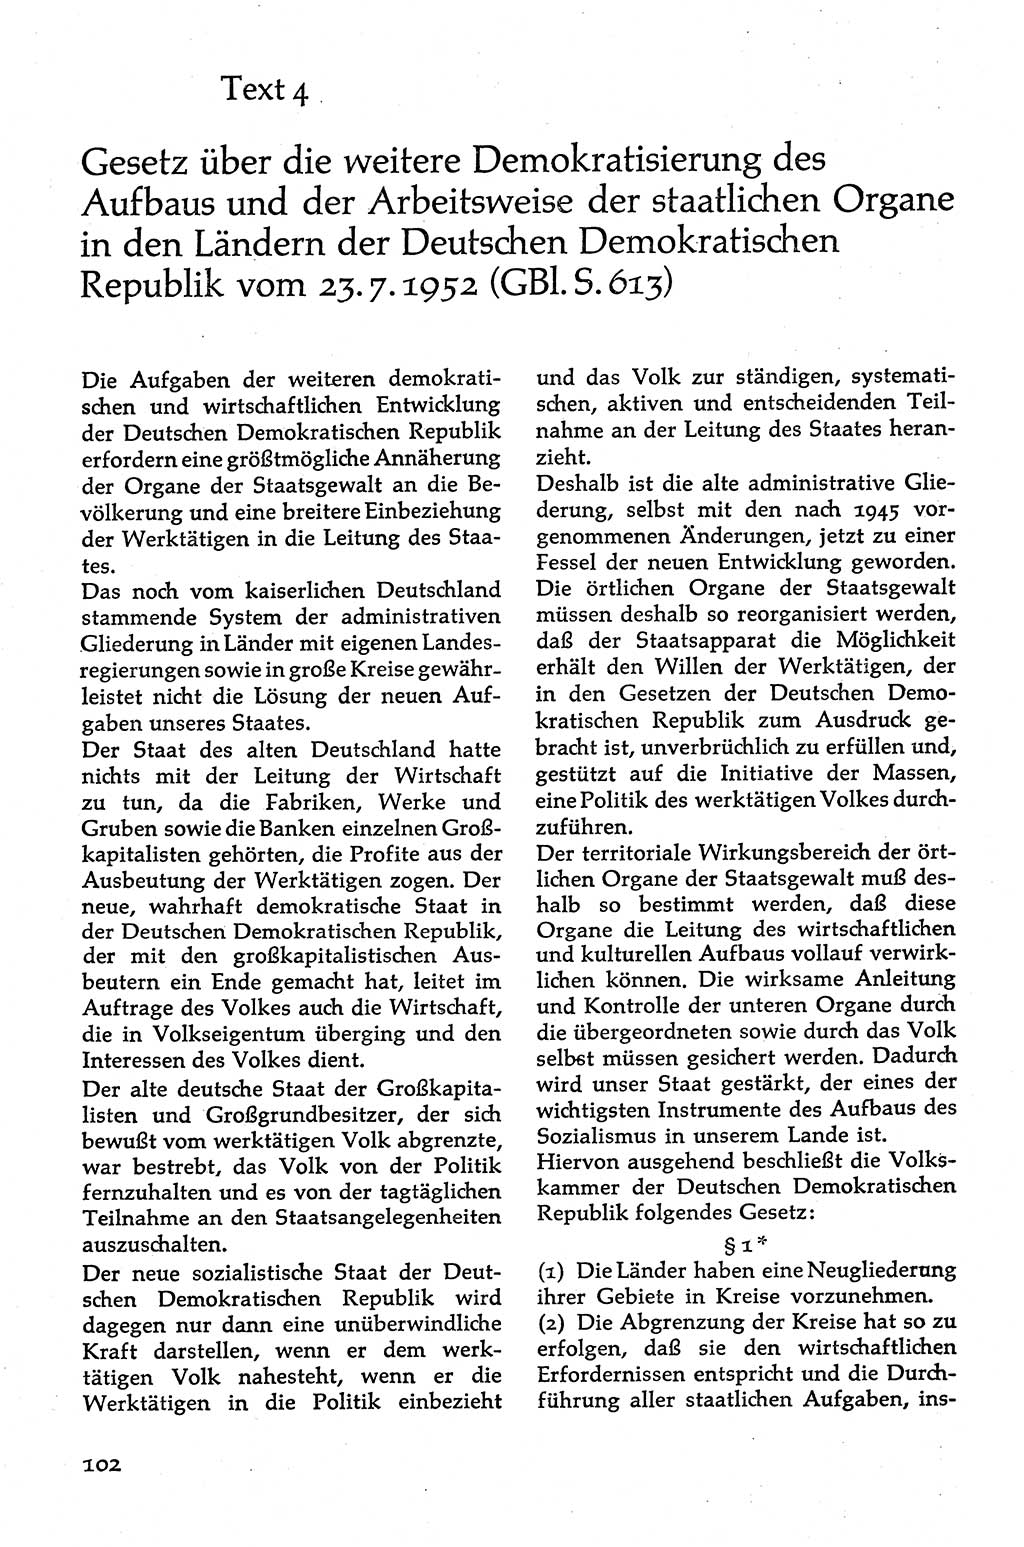 Volksdemokratische Ordnung in Mitteldeutschland [Deutsche Demokratische Republik (DDR)], Texte zur verfassungsrechtlichen Situation 1963, Seite 102 (Volksdem. Ordn. Md. DDR 1963, S. 102)